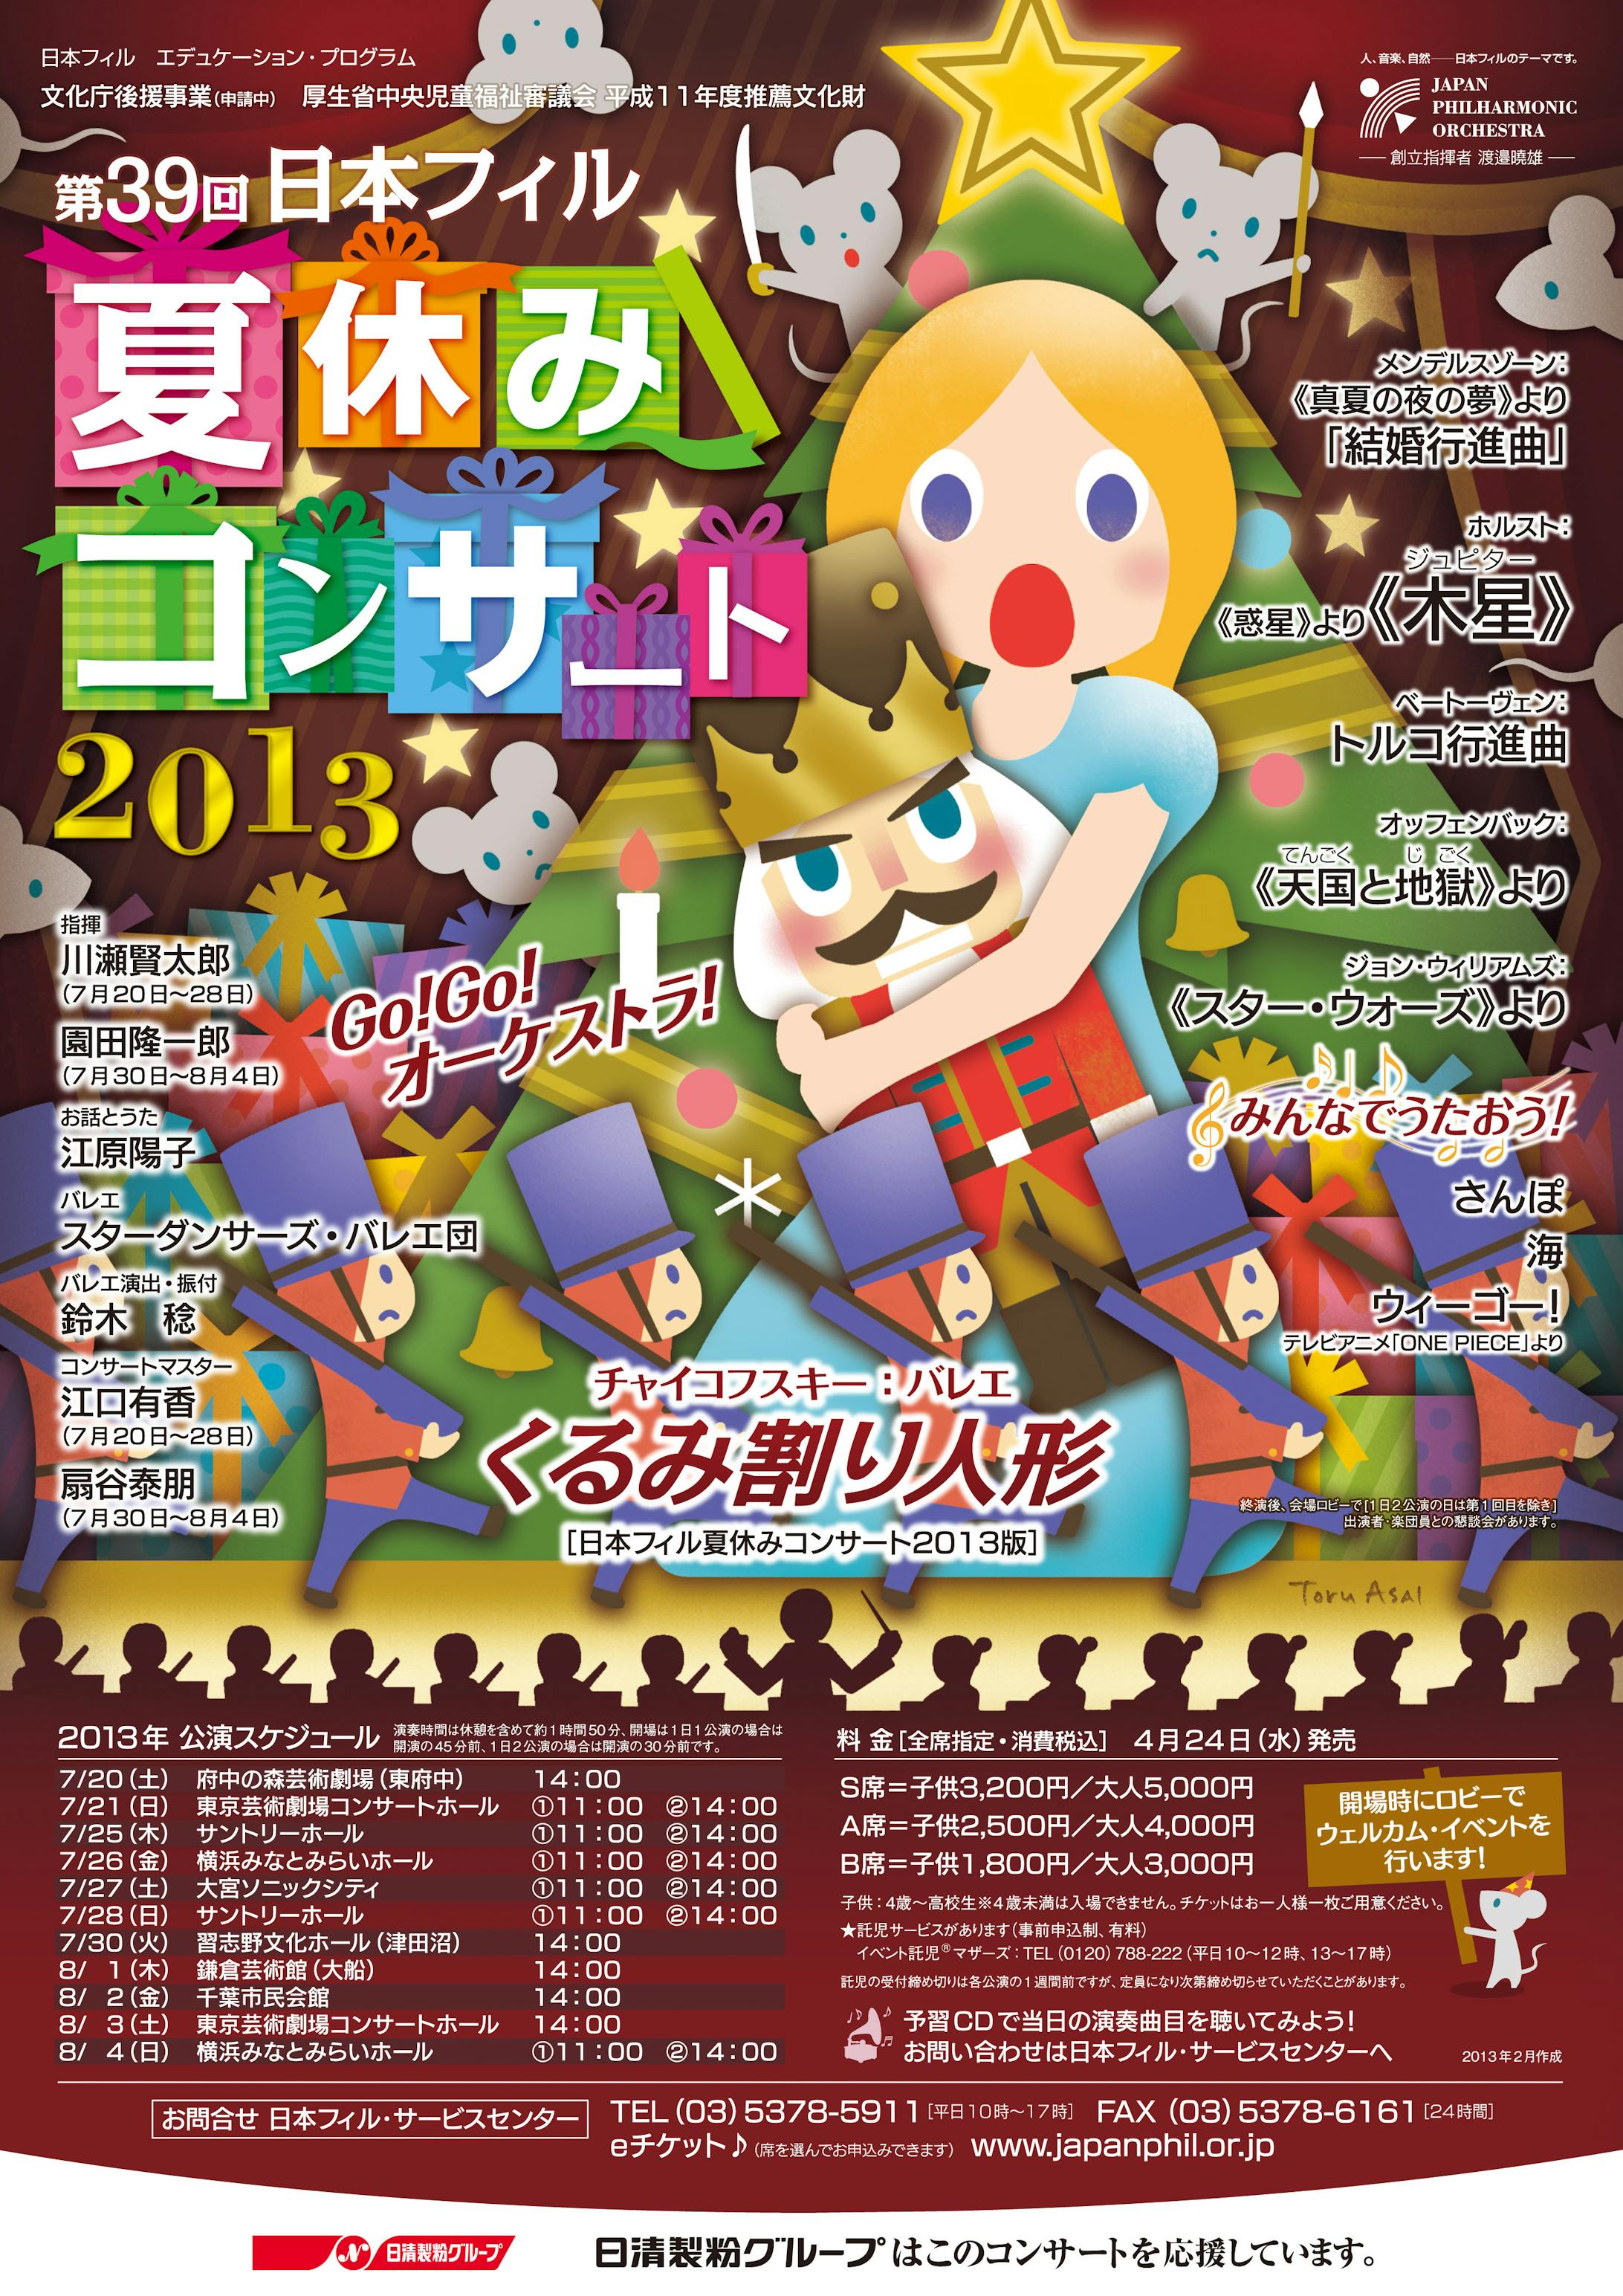 日本フィル 夏休みコンサート 2013-1